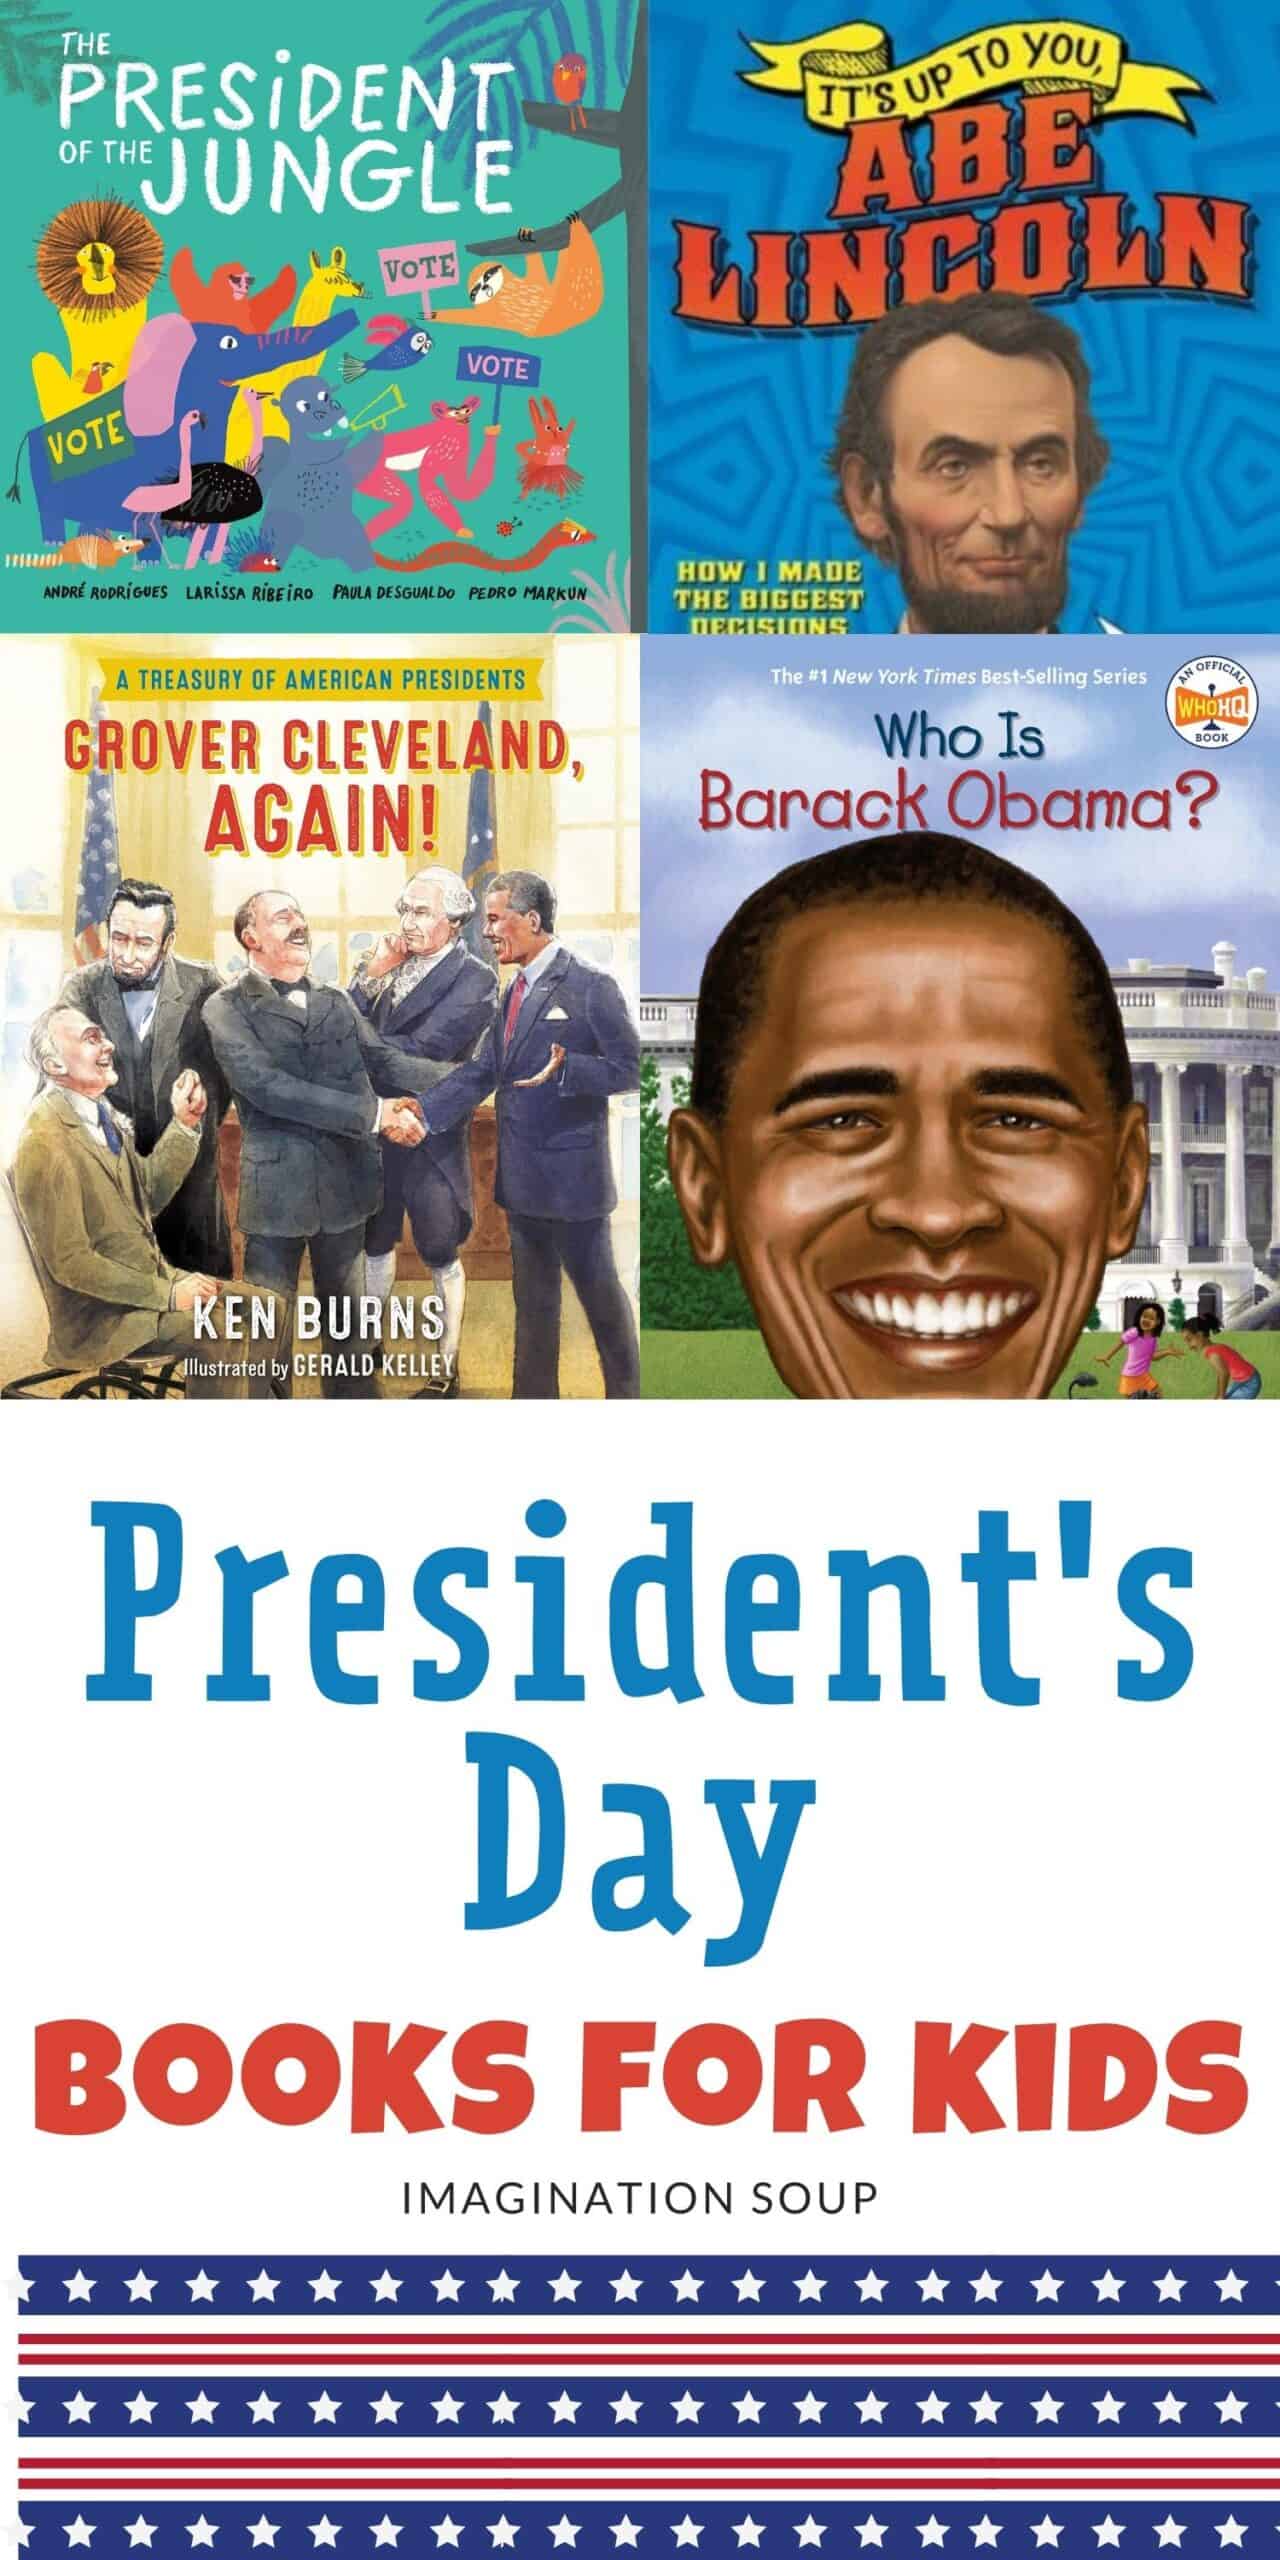 President's Day books for kids